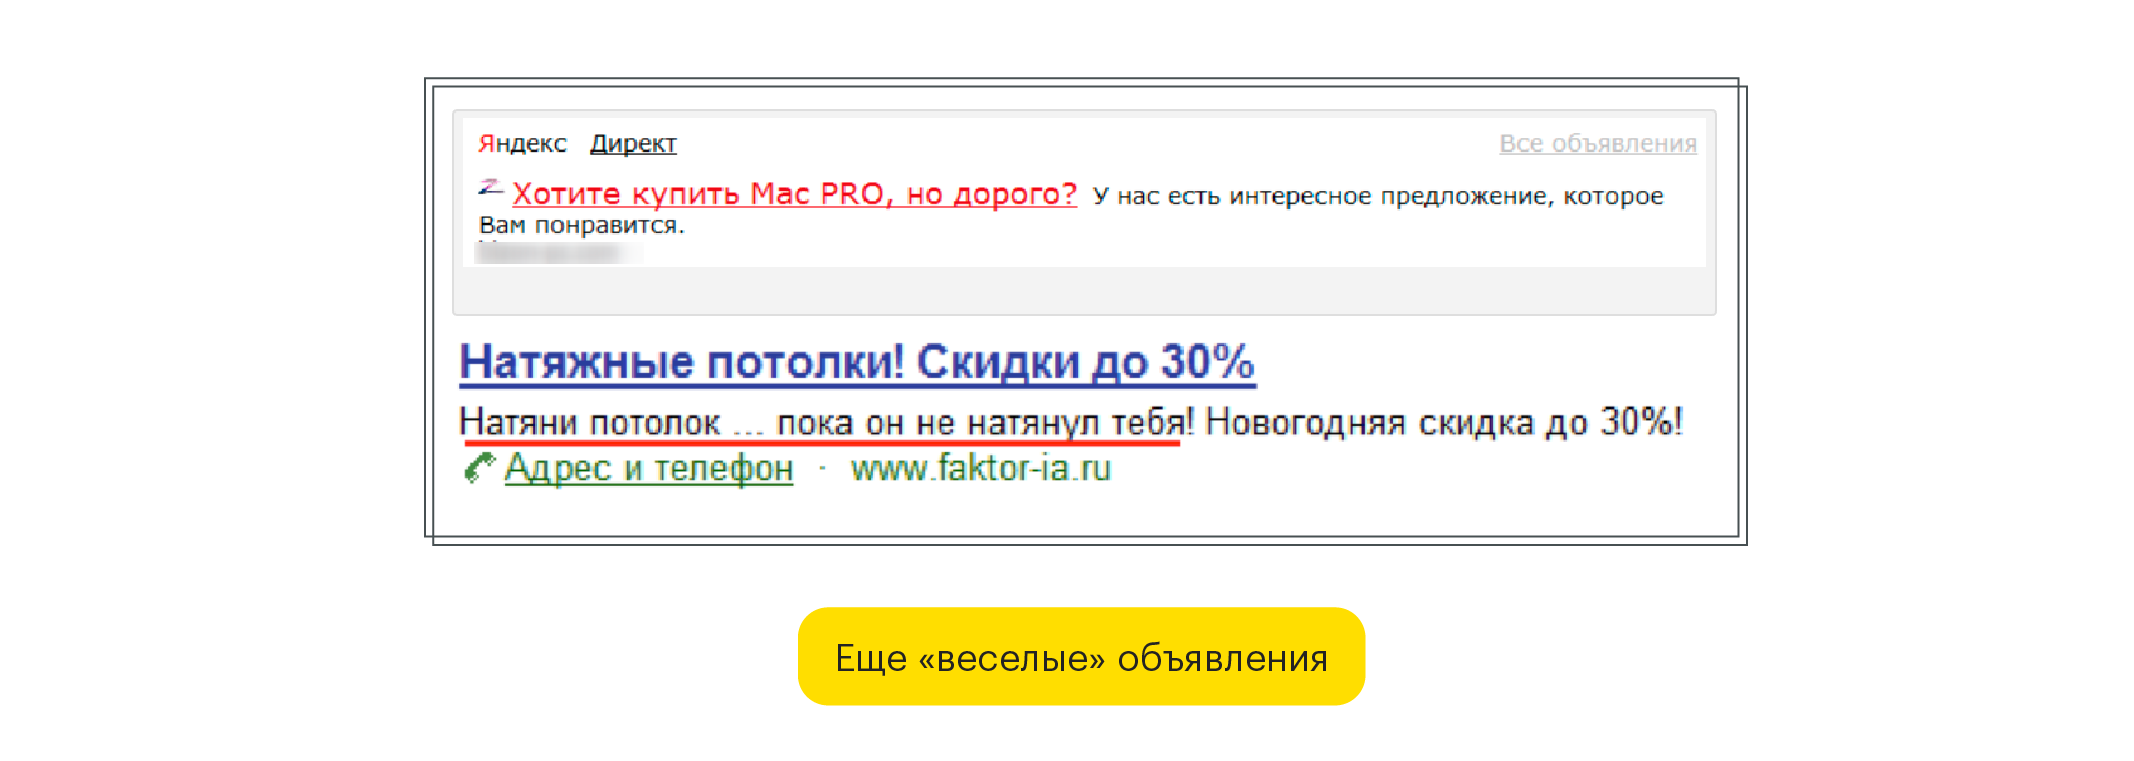 Смешные объявления из Яндекс Директ